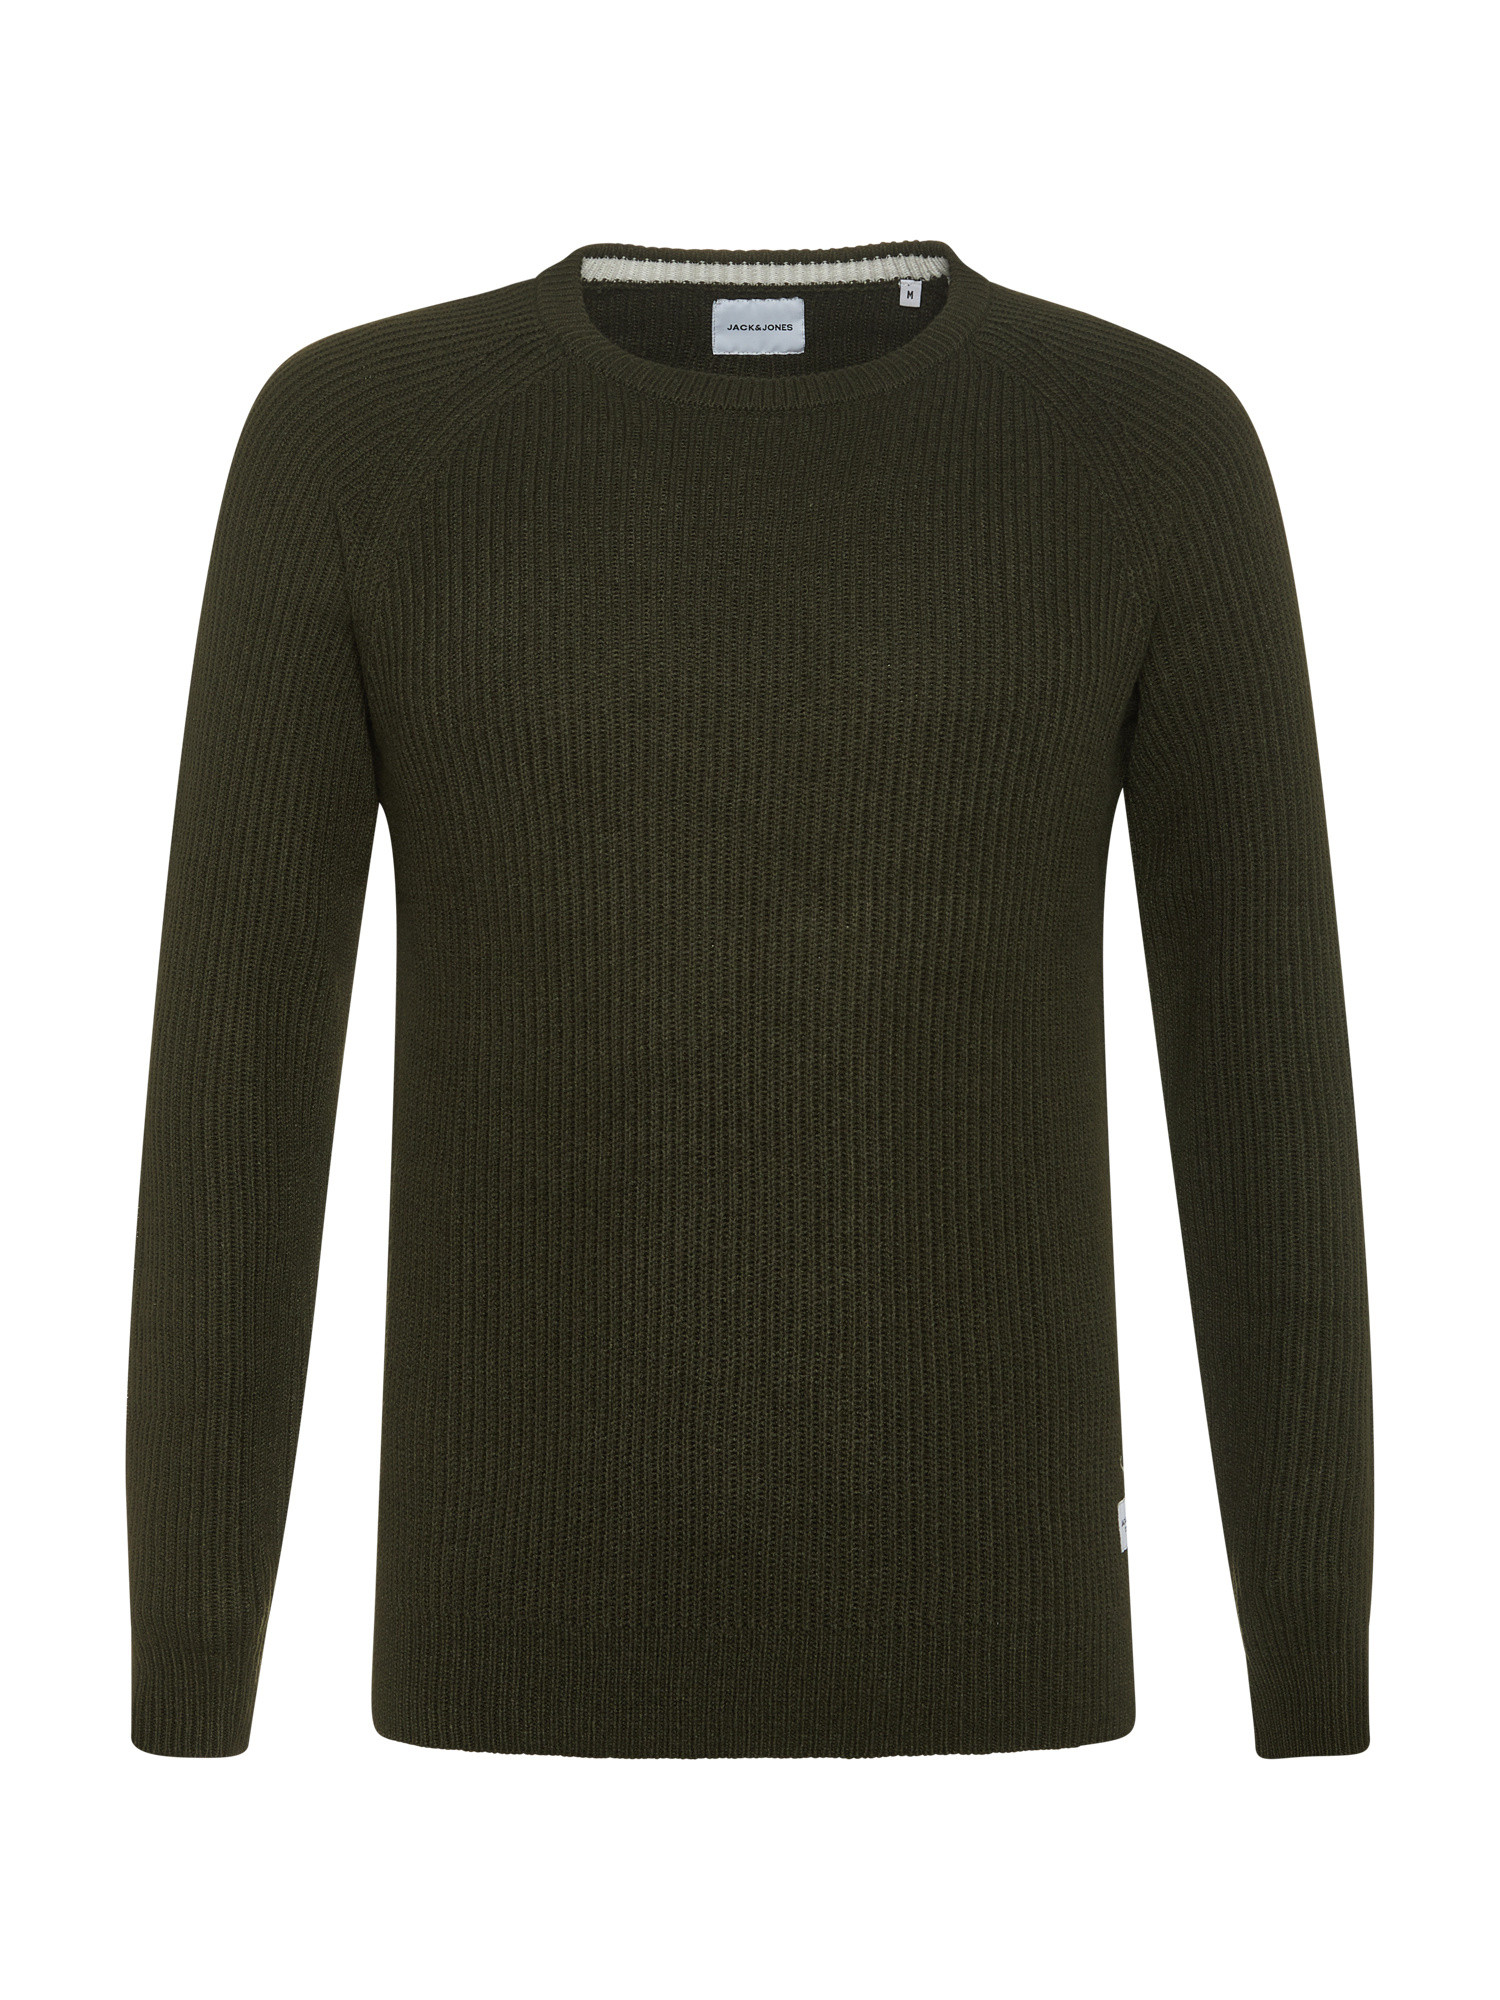 Вязаный свитер в рубчик Jack & Jones, темно-зеленый